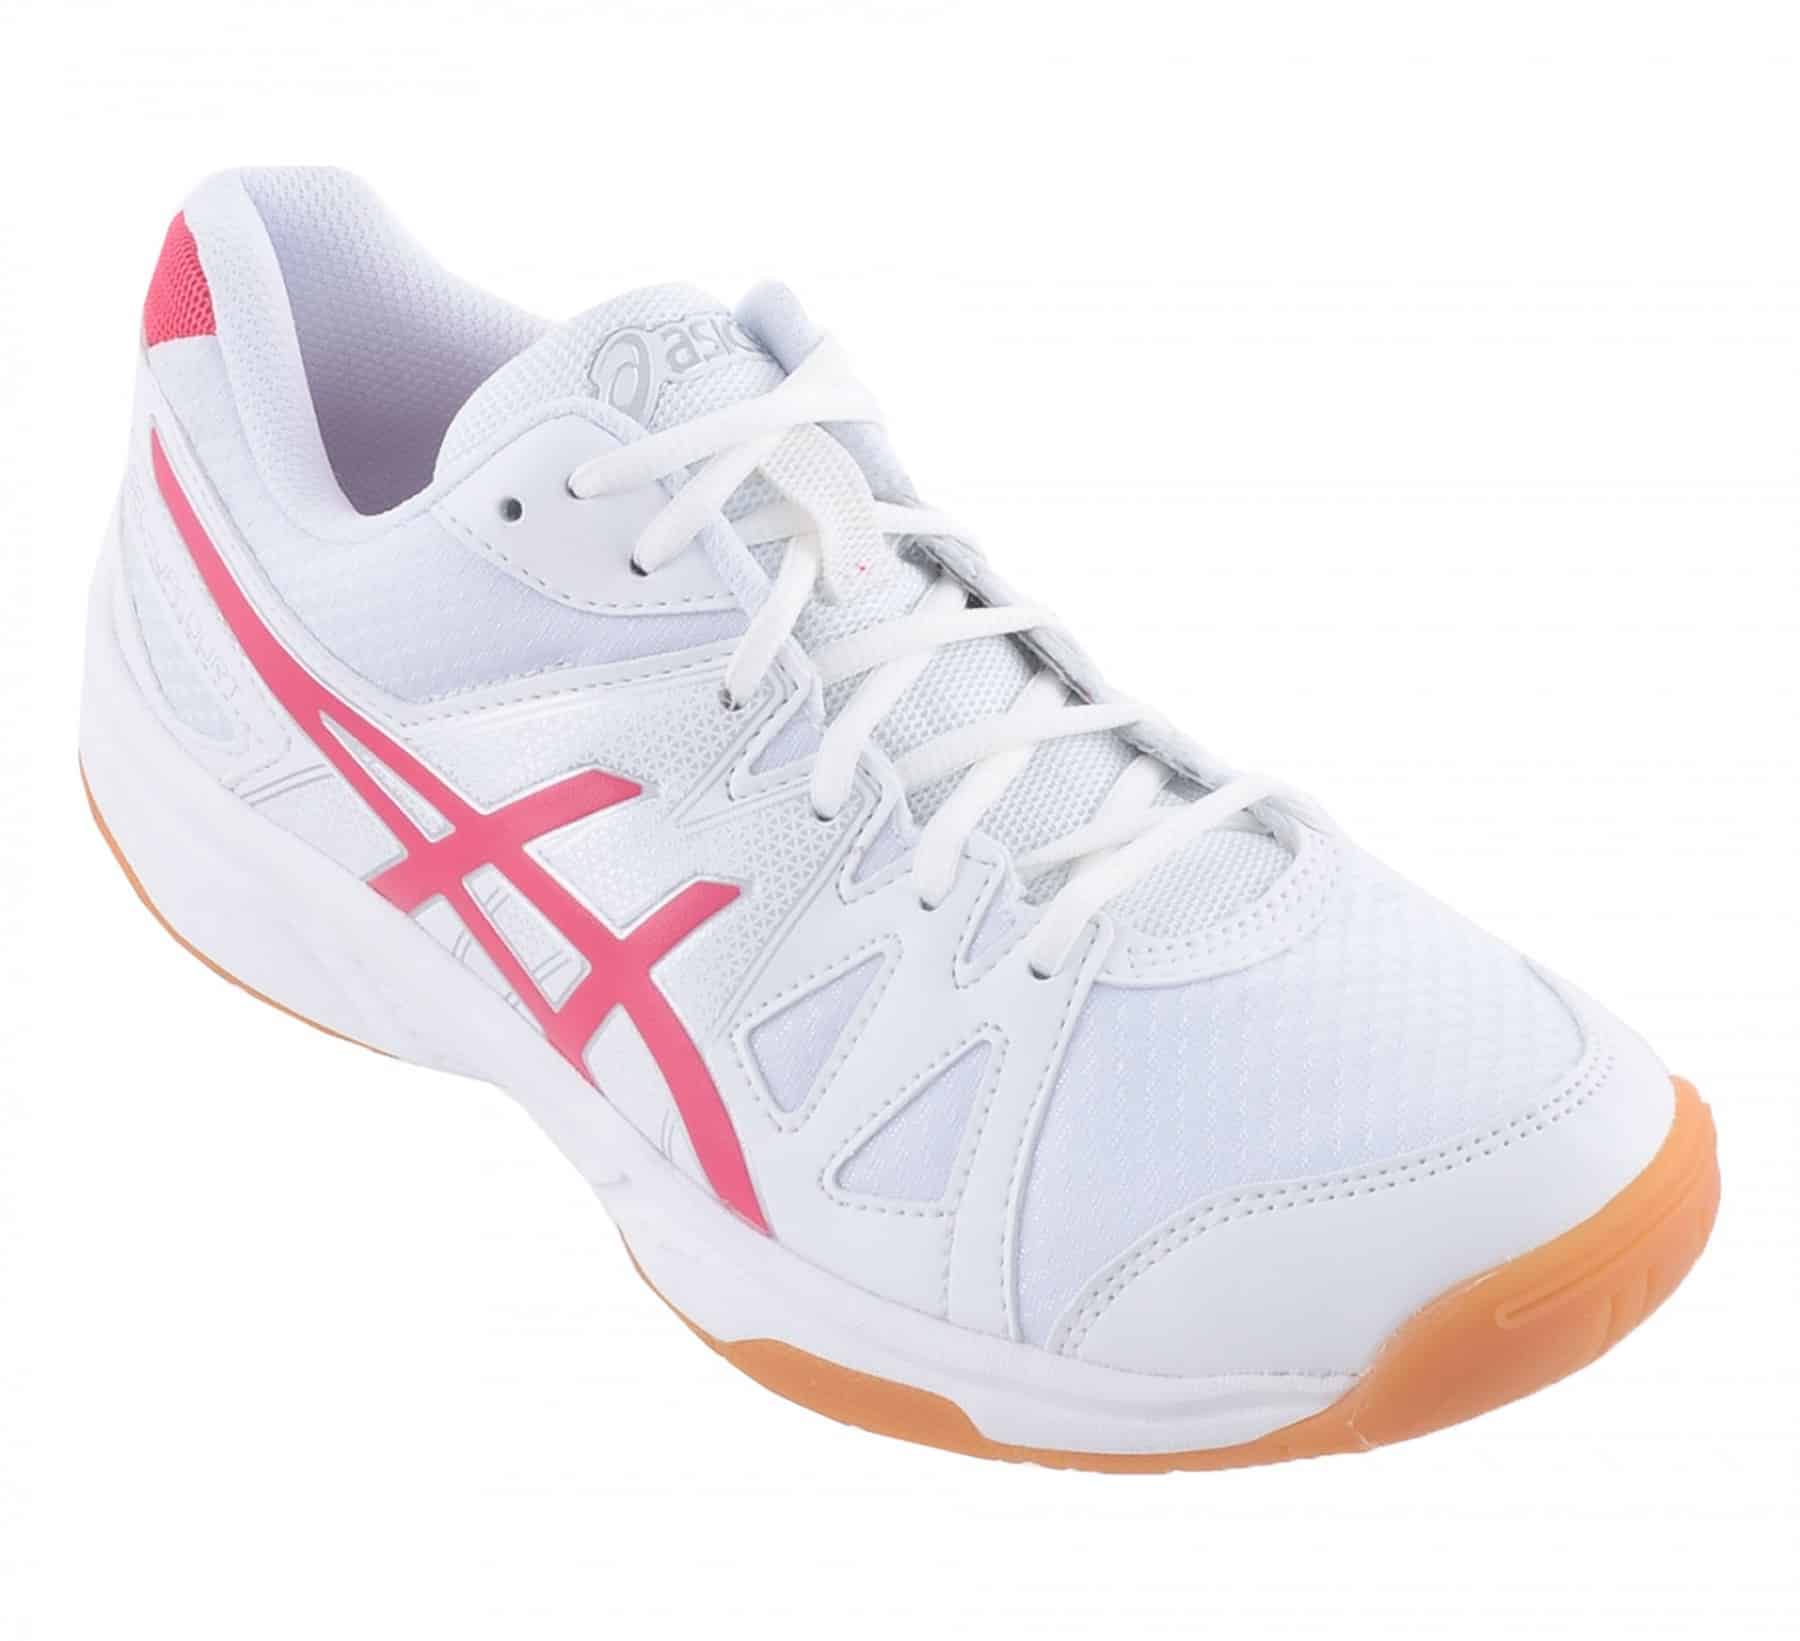 Asics gel upcourt schoenen voor badminton